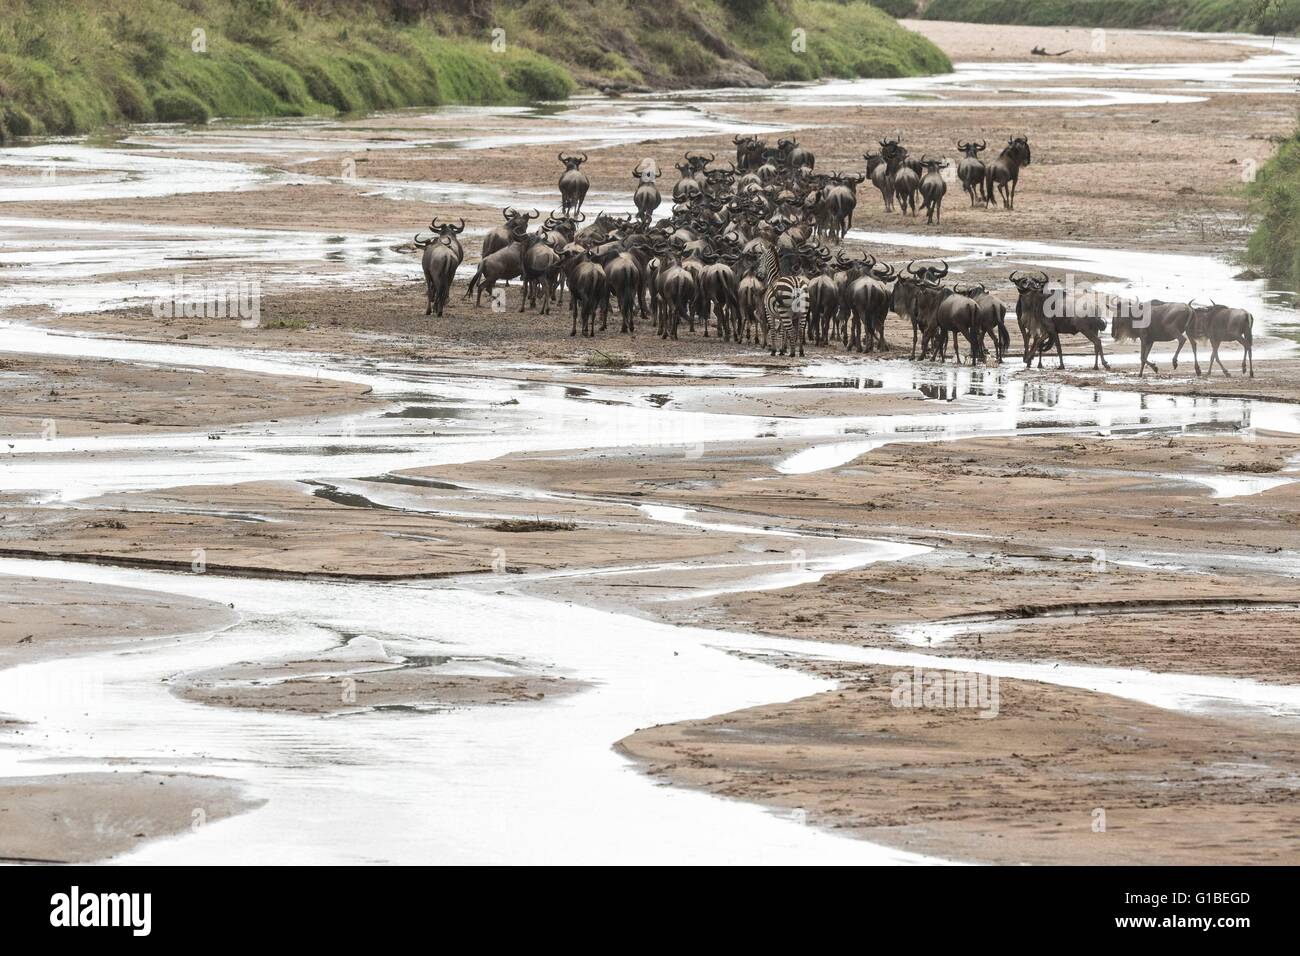 Kenya, Masai-Mara game reserve, le gnou (Connochaetes taurinus), de la migration des troupeaux de boire à la rivière Sand Banque D'Images